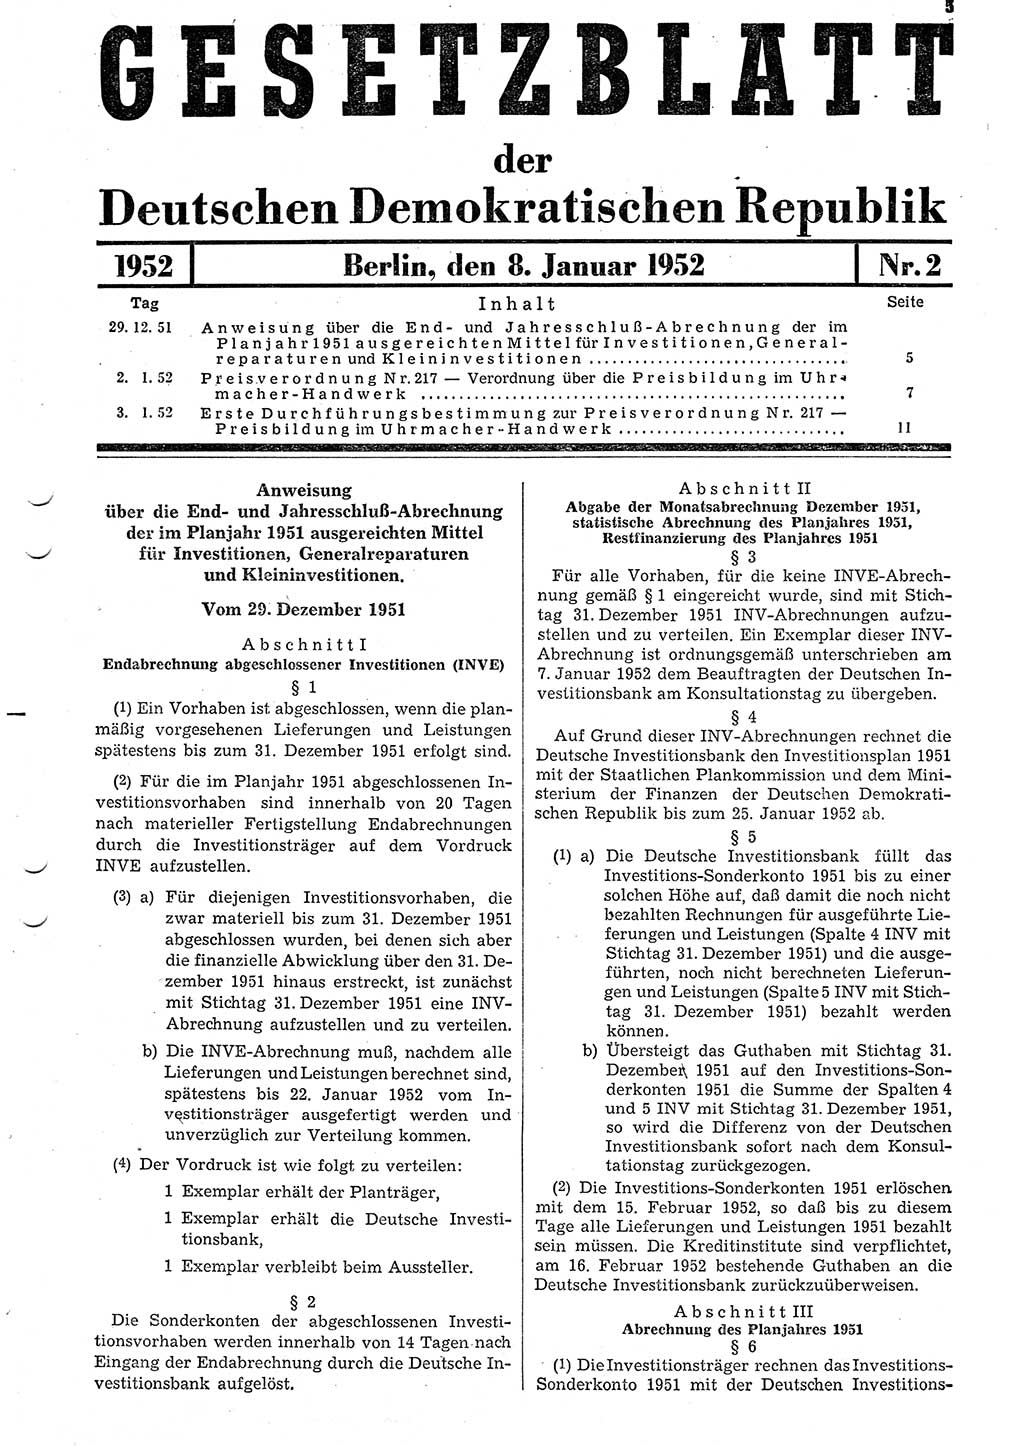 Gesetzblatt (GBl.) der Deutschen Demokratischen Republik (DDR) 1952, Seite 5 (GBl. DDR 1952, S. 5)